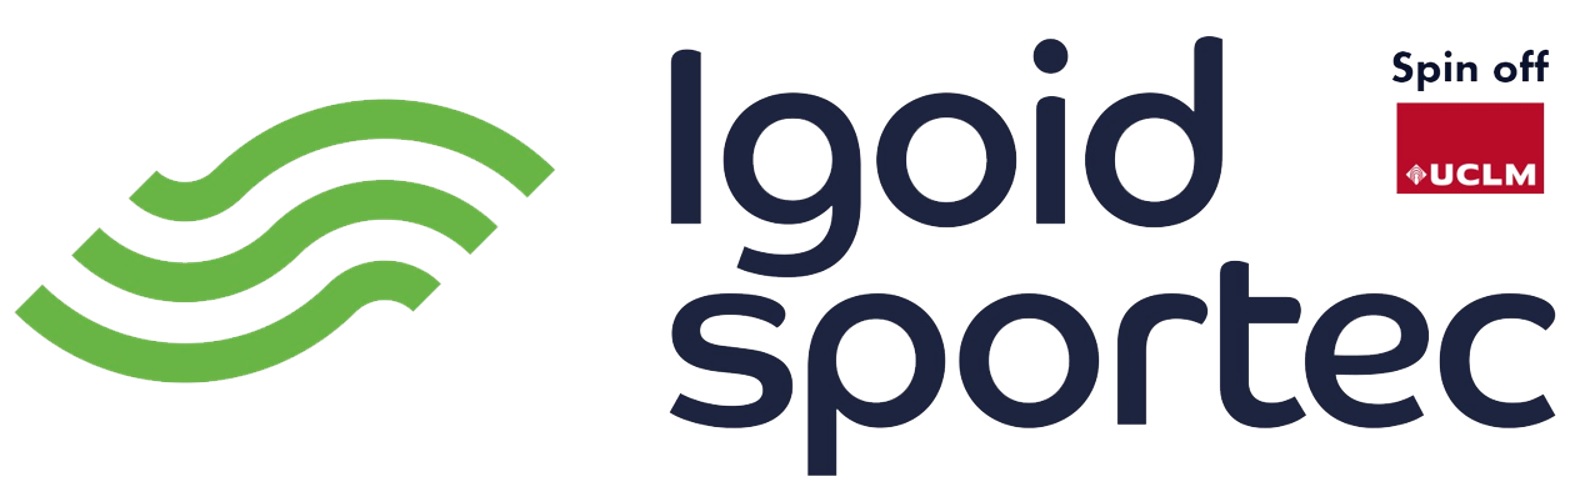 logo3sportecjpg